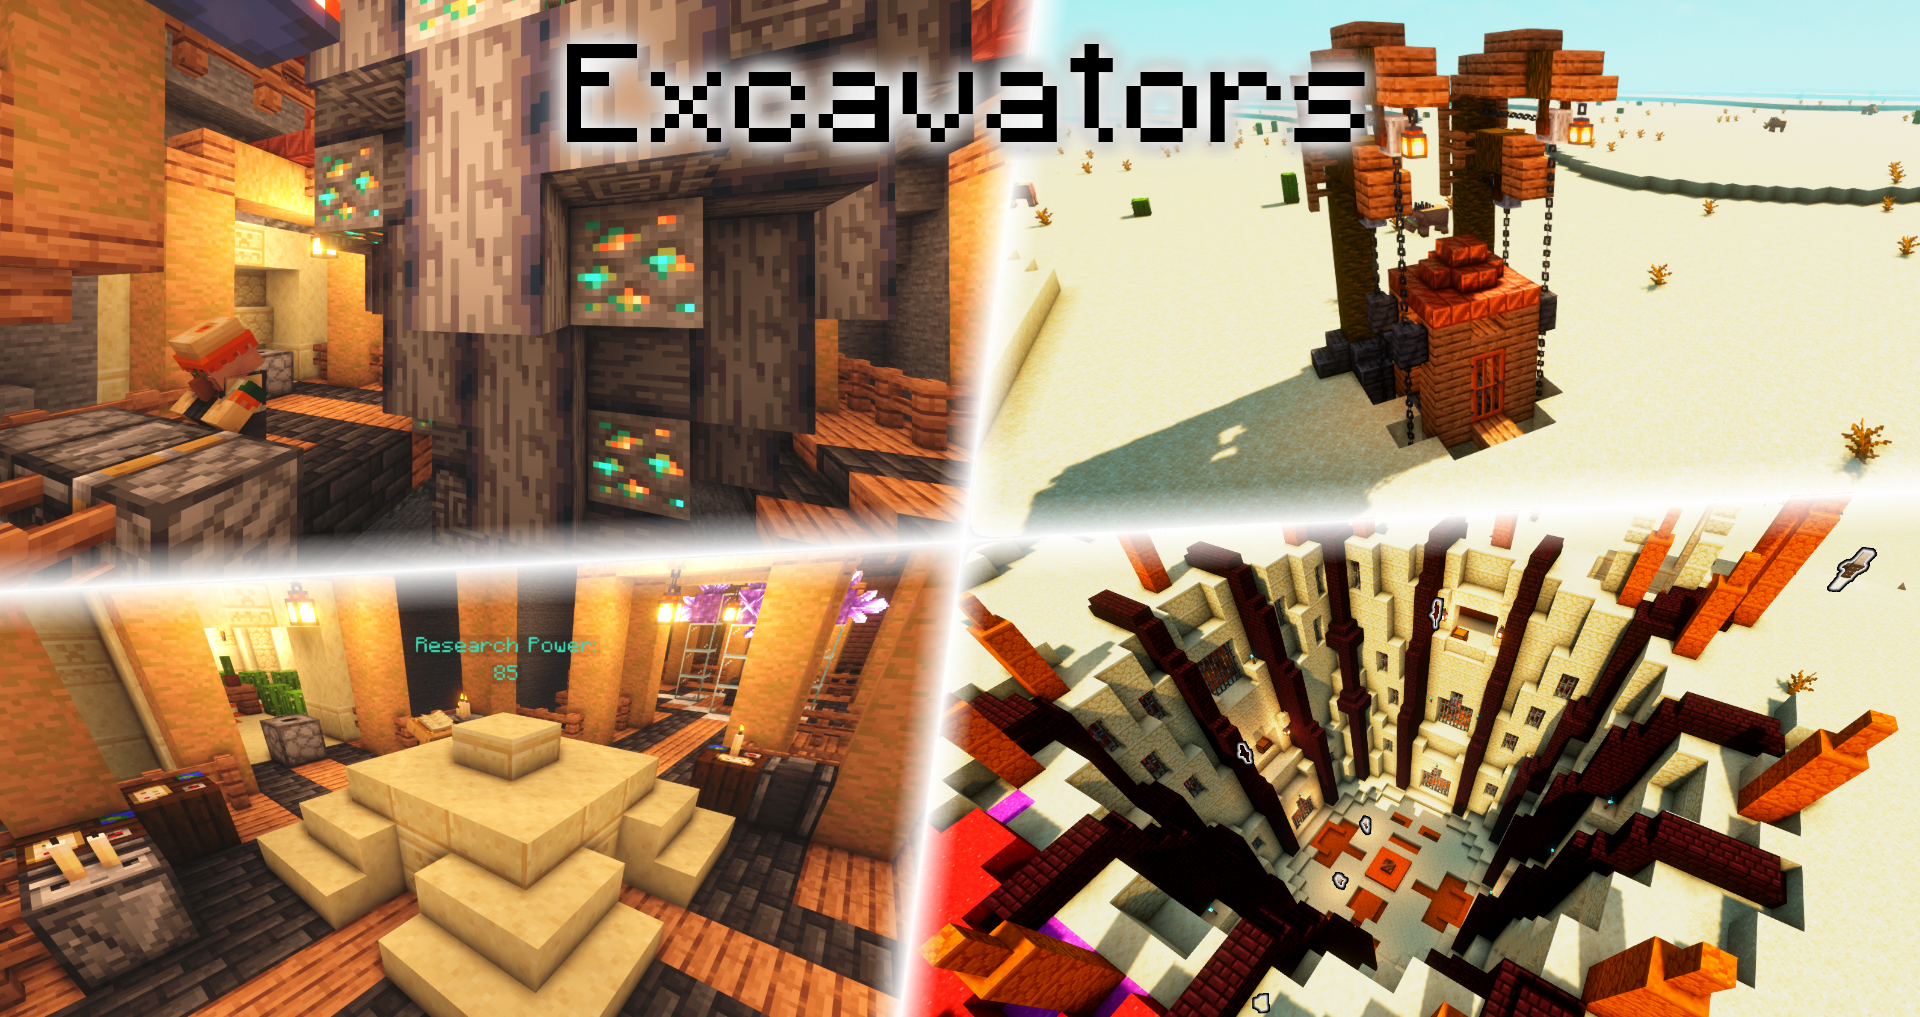 9. Excavators